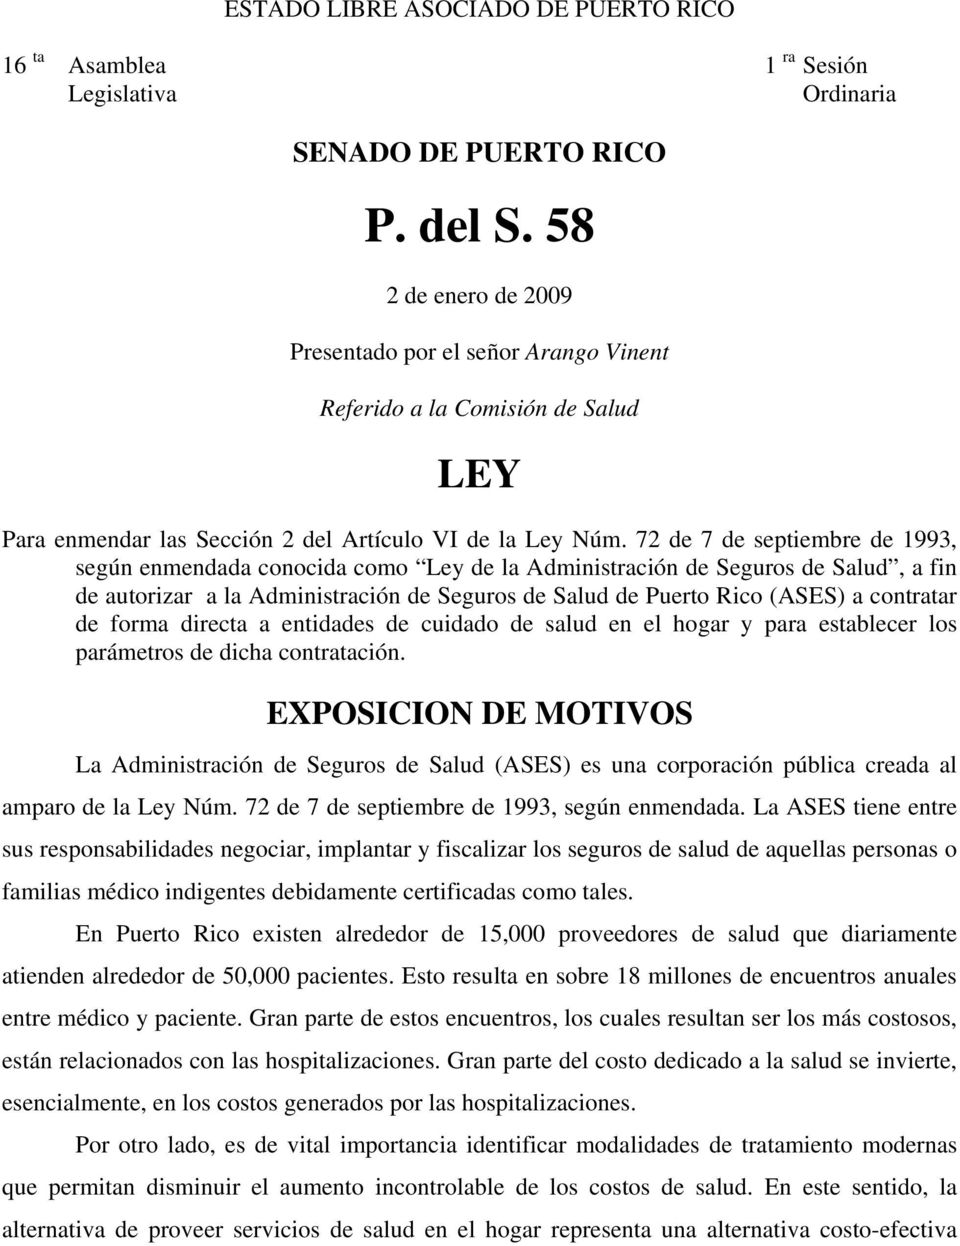 72 de 7 de septiembre de 1993, según enmendada conocida como Ley de la Administración de Seguros de Salud, a fin de autorizar a la Administración de Seguros de Salud de Puerto Rico (ASES) a contratar